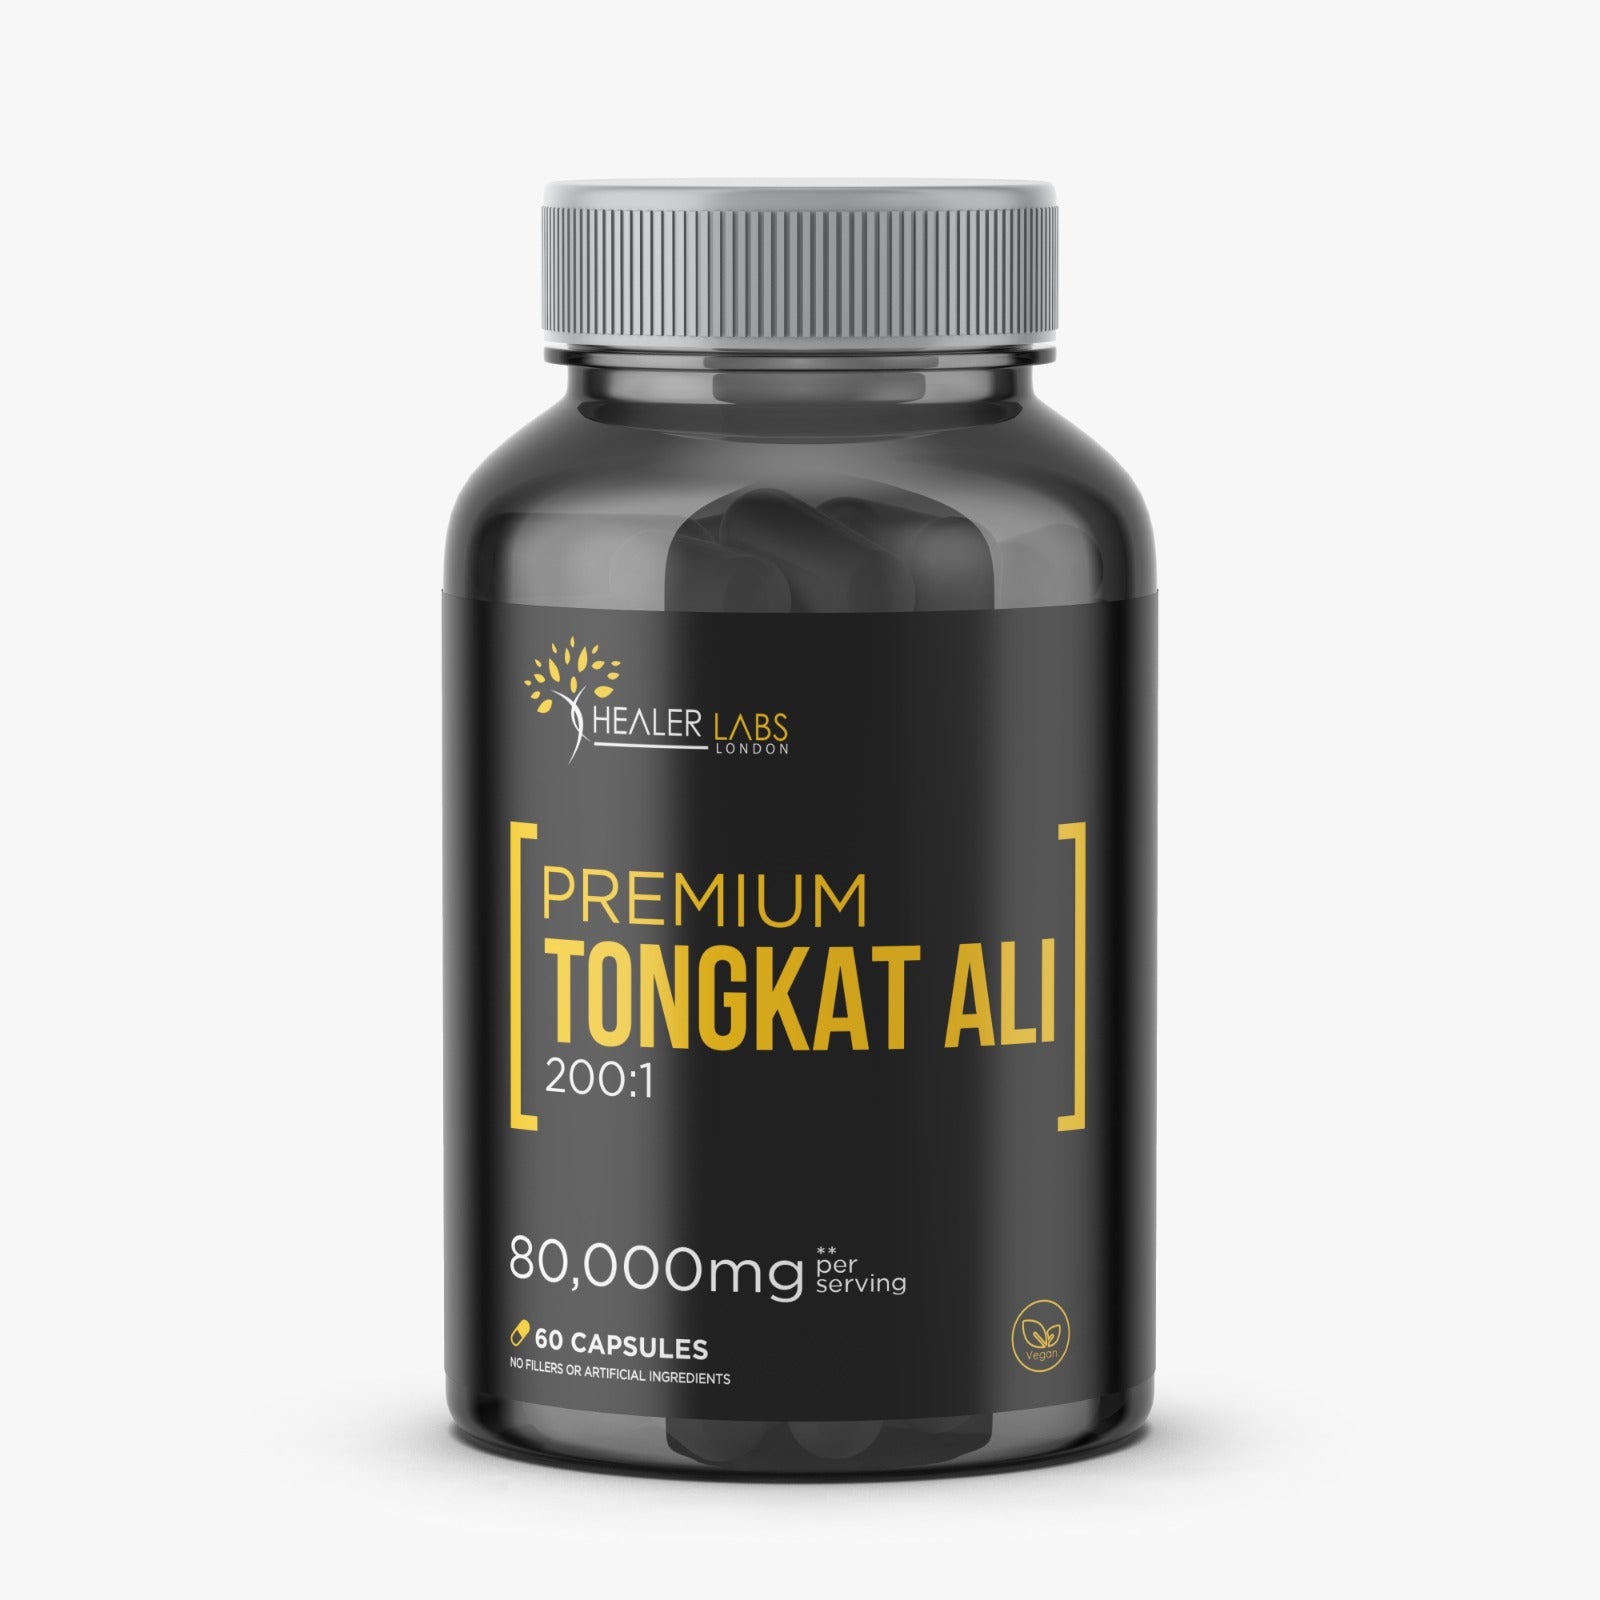 Premium TongkatAli 200:1 Extract -  Healer Labs London